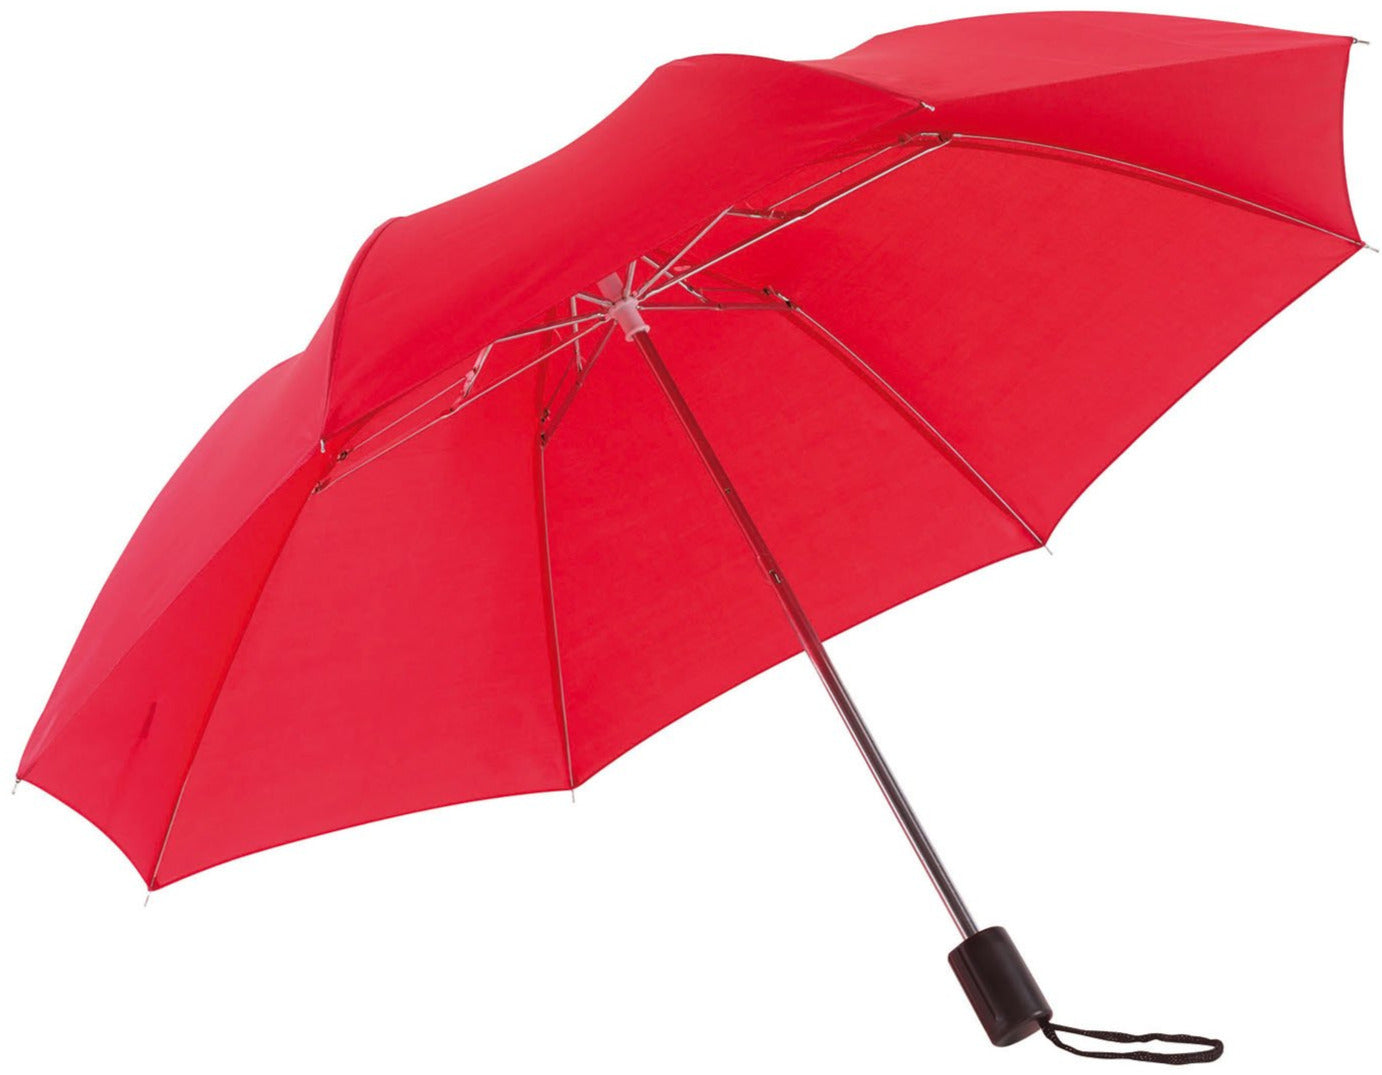 Κόκκινη παιδική ομπρέλα βροχής, σπαστή, απλή, και σε πολλά χρώματα.